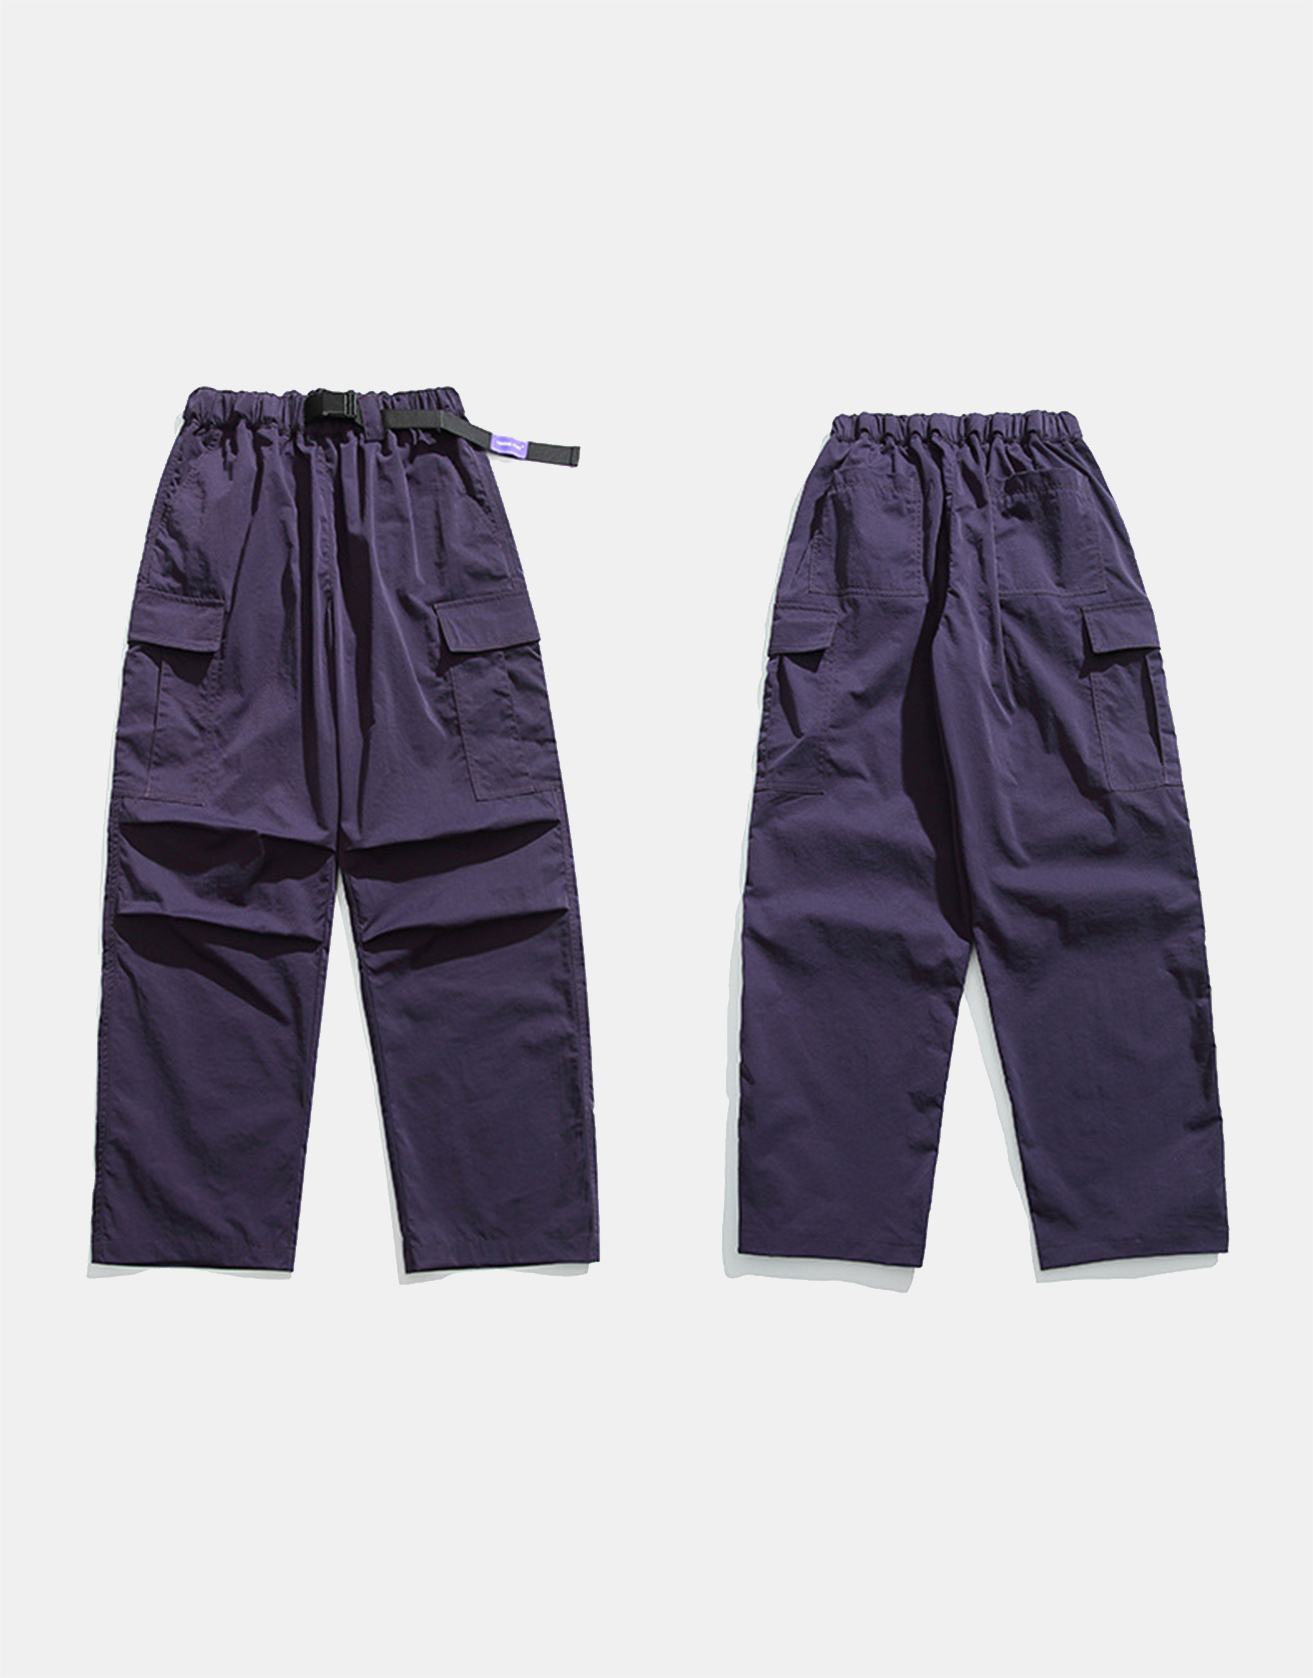 American-style Cargo Paratrooper Pants / TECHWEAR CLUB / Techwear